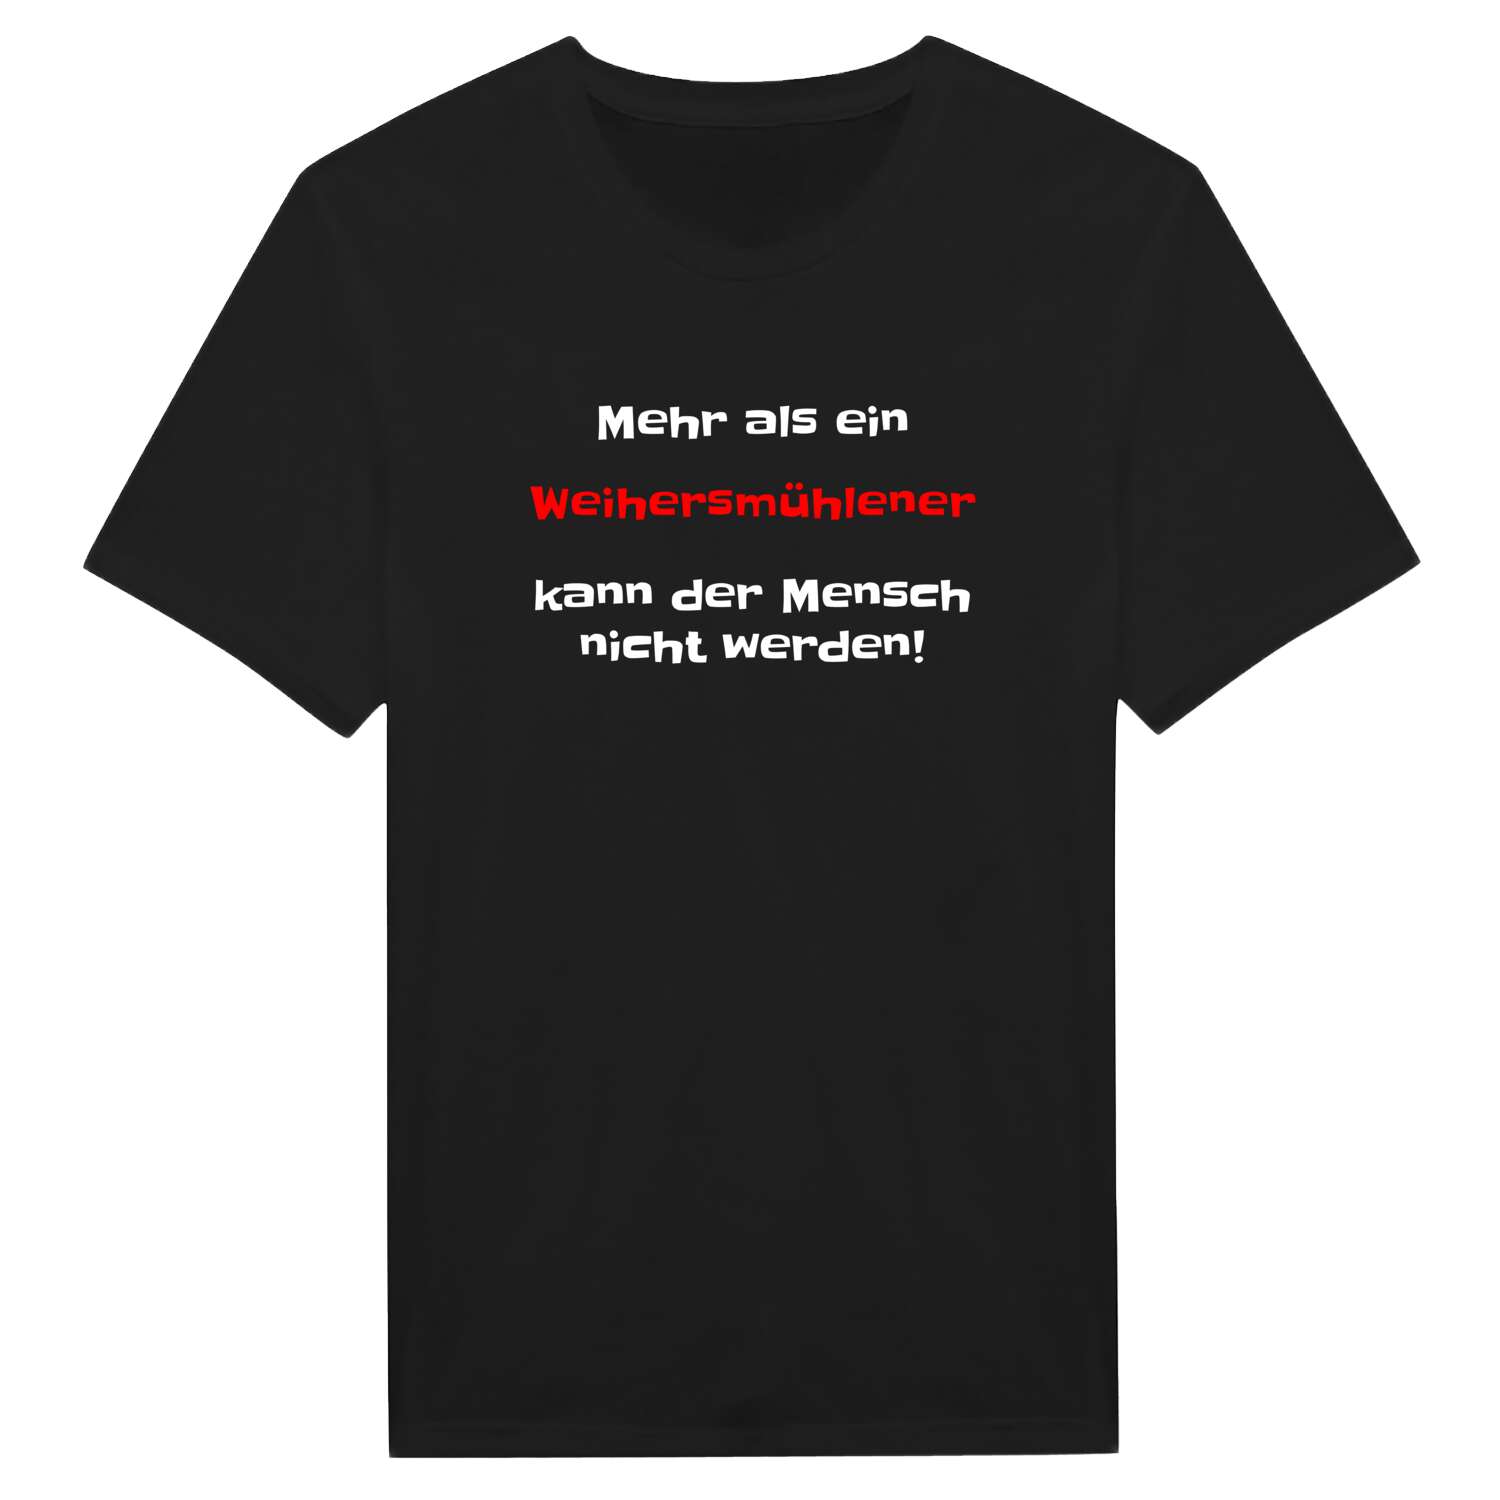 Weihersmühle T-Shirt »Mehr als ein«